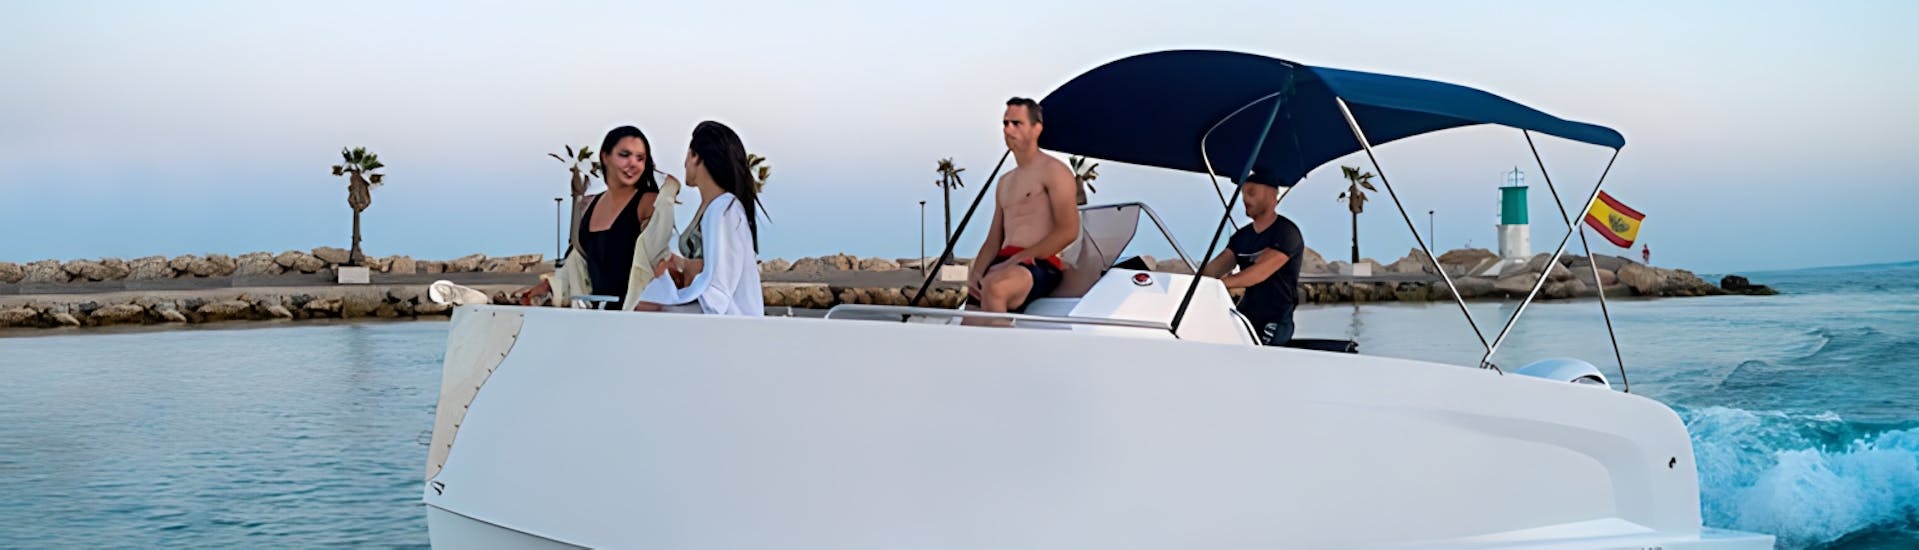 Personen genießen das Meer in Puerto Banús beim Bootsverleih in Marbella mit Lizenz (bis zu 8 Personen)